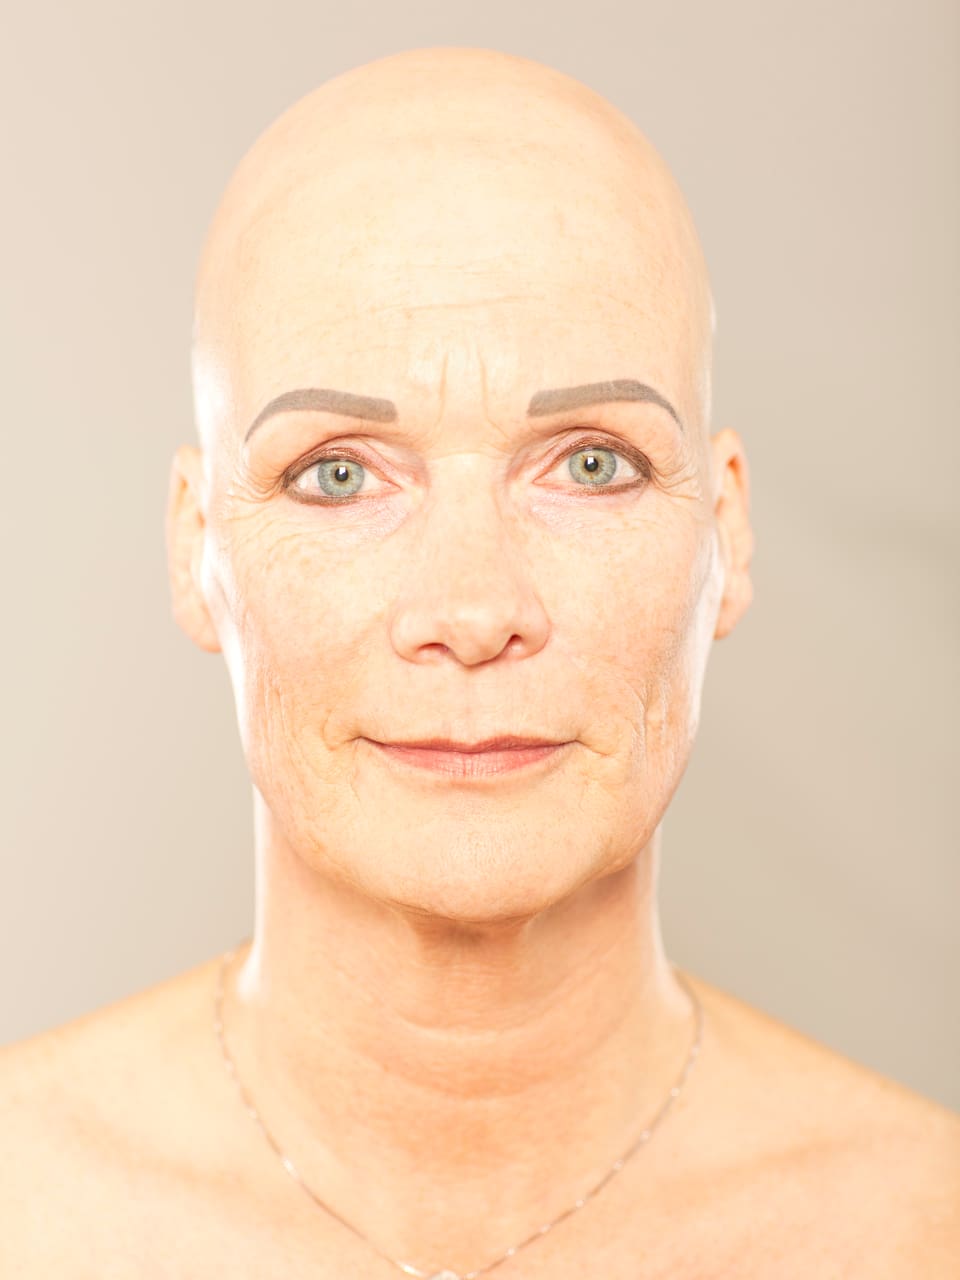 Porträt: Nahaufnahme einer Frau mit Glatze vor grauem Hintergrund.